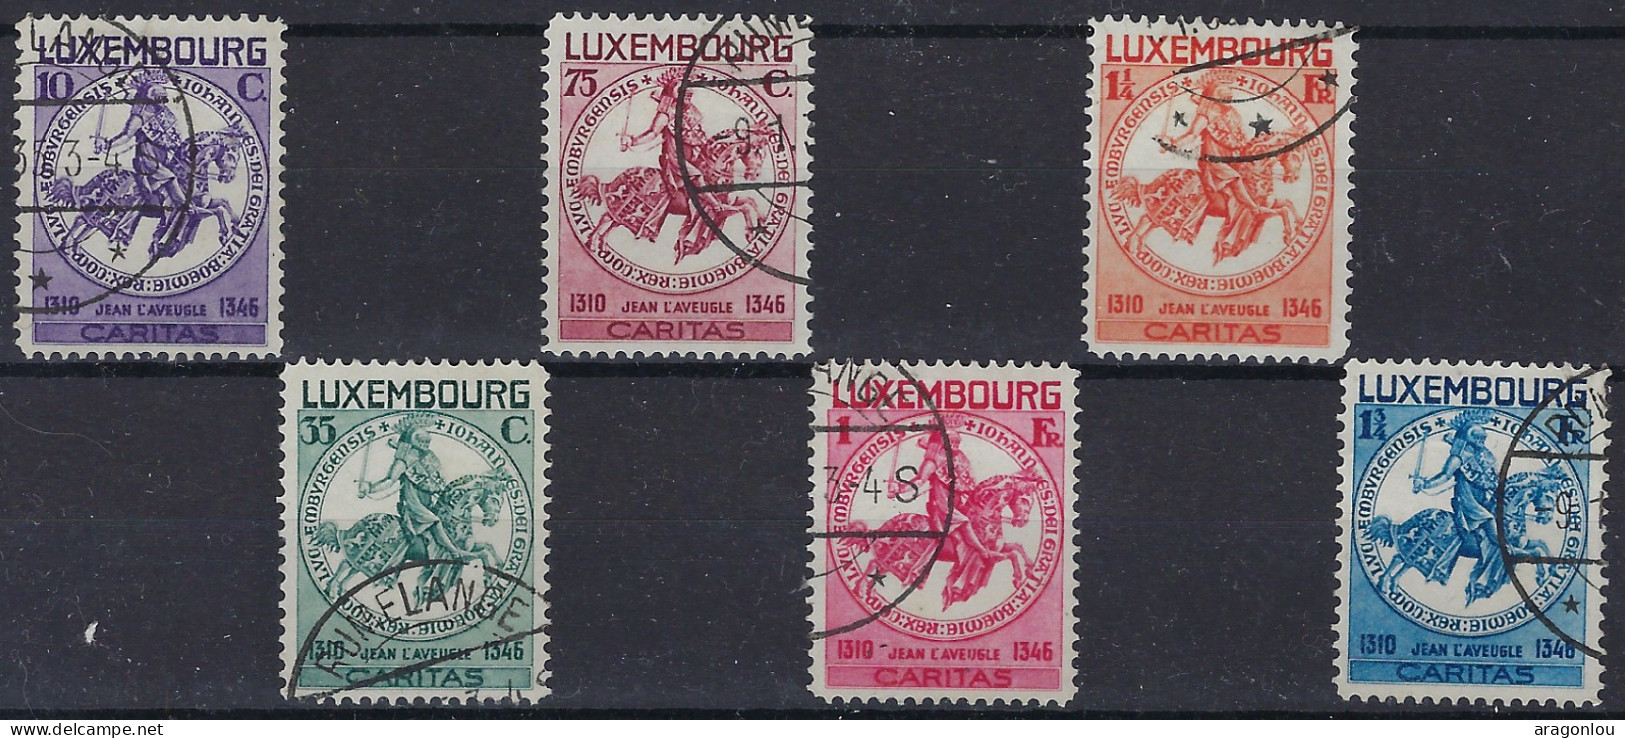 Luxembourg - Luxemburg - Timbres  1934  Série    Sceau De Jean L'Aveugle    °   VC.200,- - Oblitérés